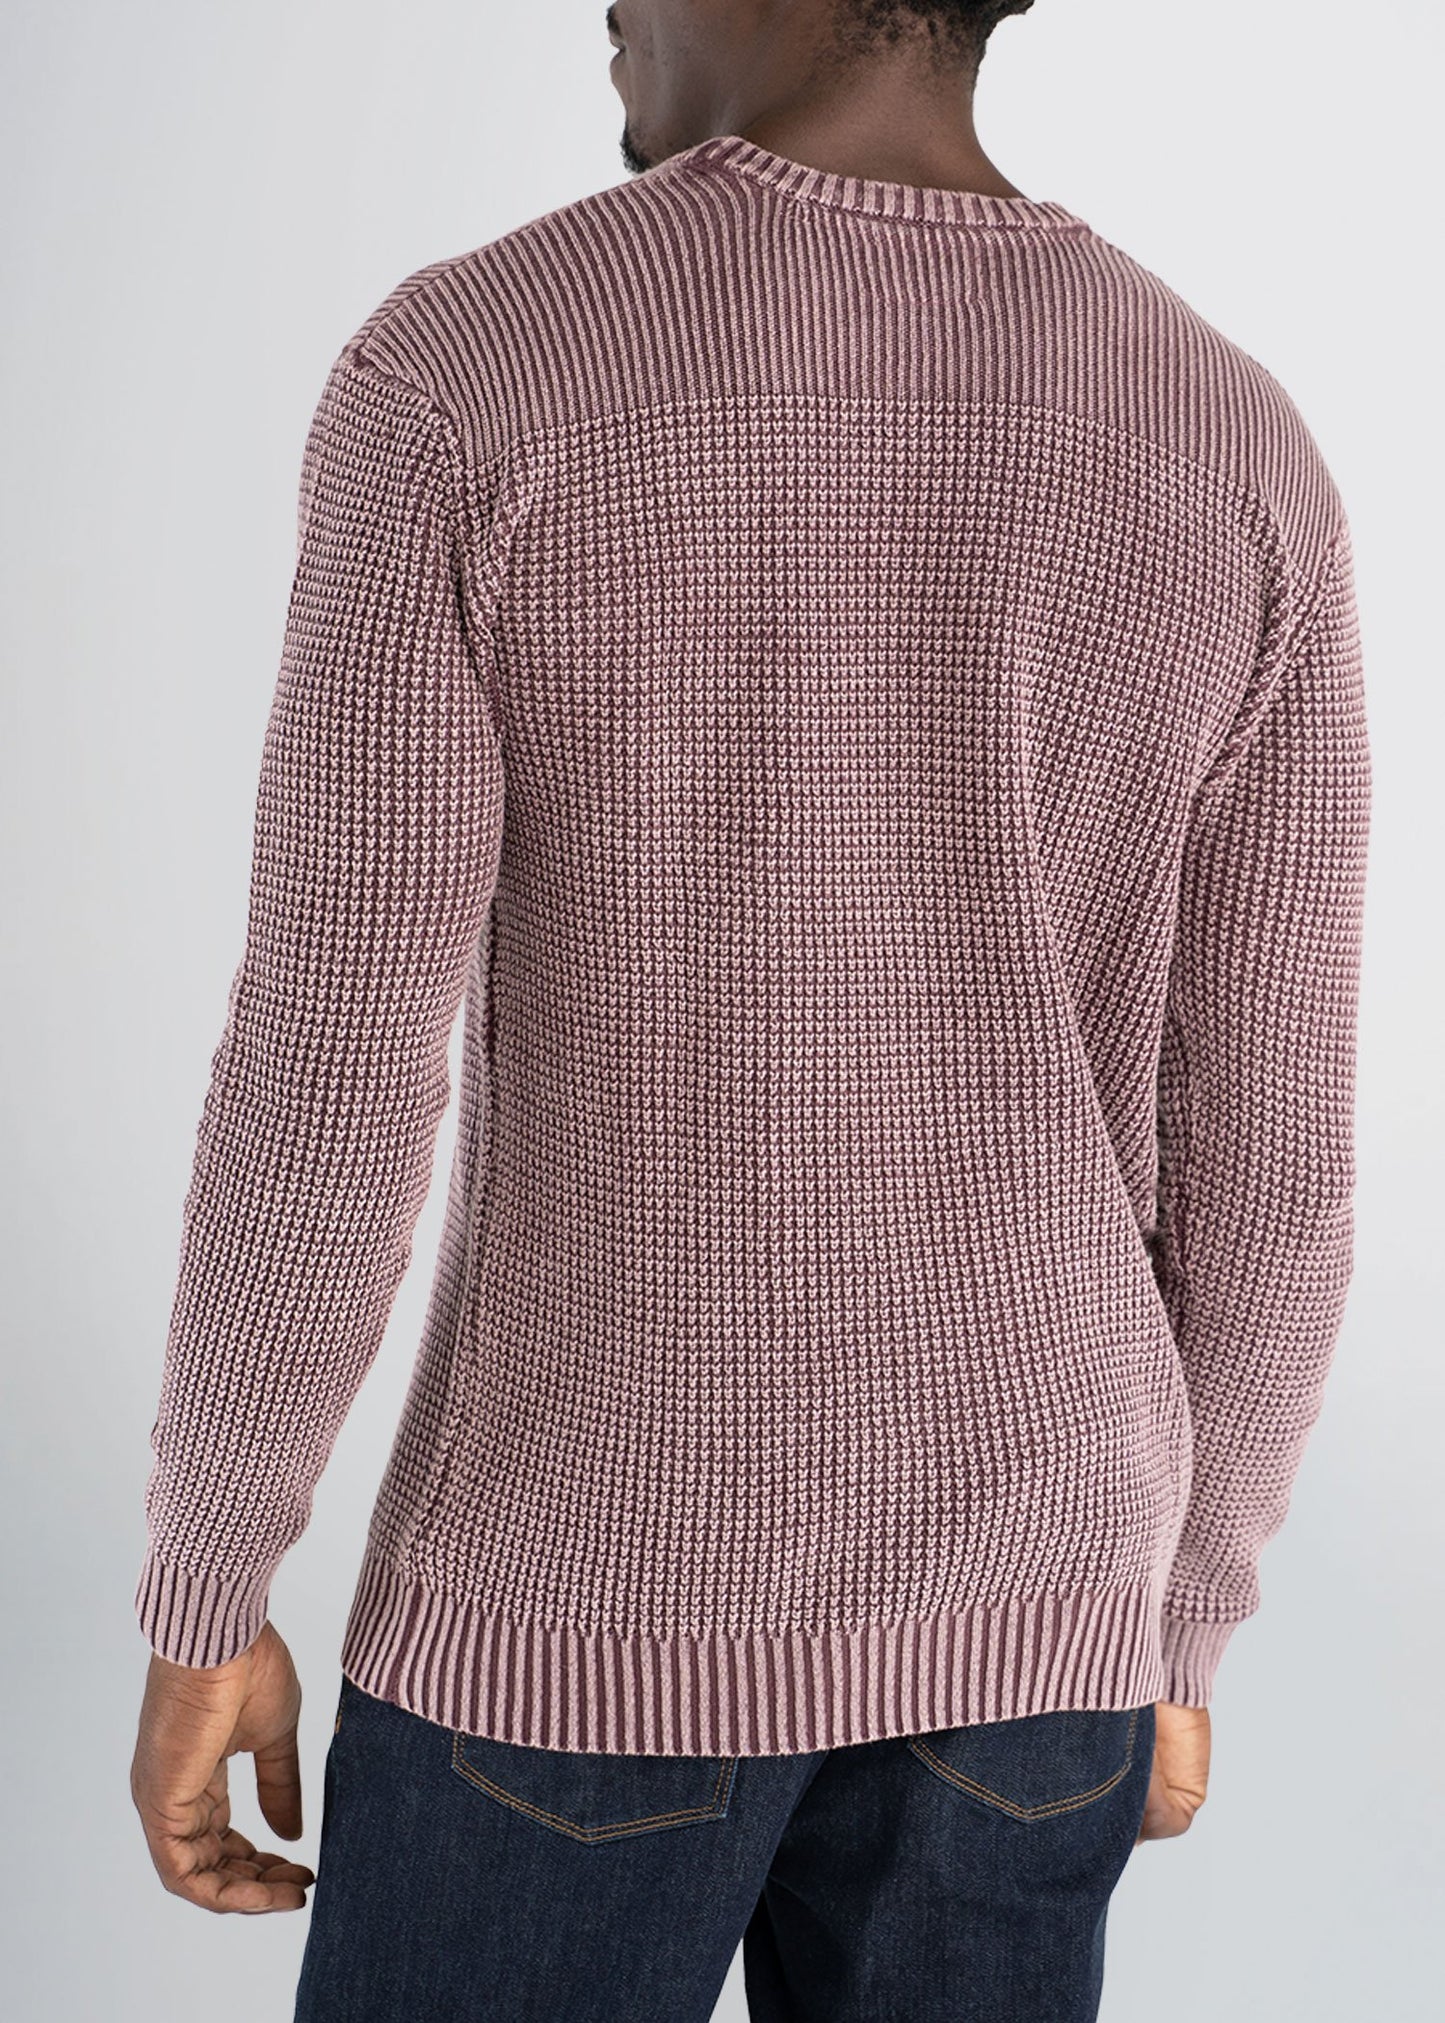 americantall-acidwash-knitsweater-maroon-back